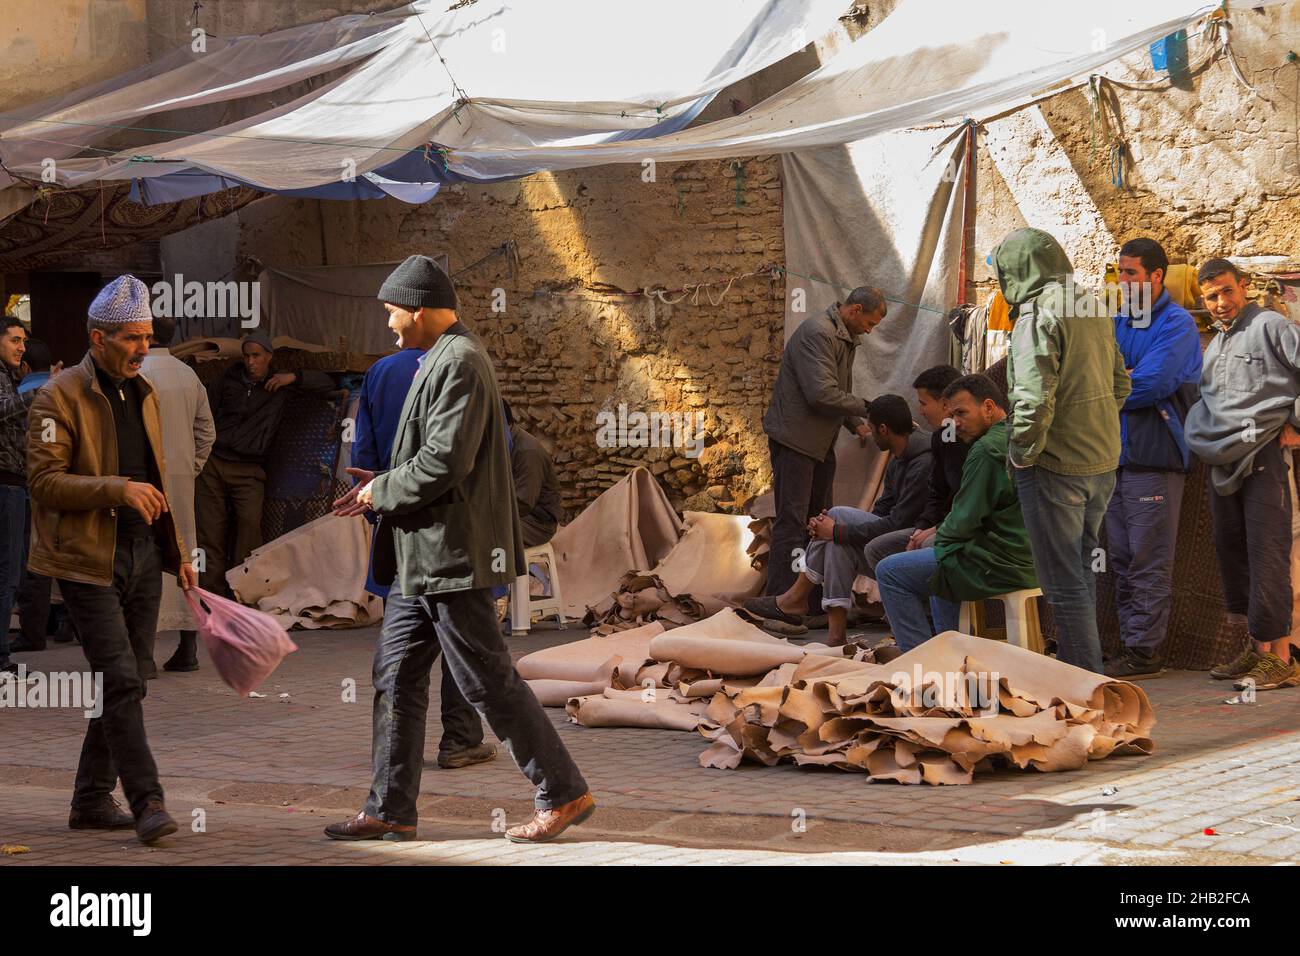 Fez, Marocco - Febbraio 23. 2019: La gente del posto vende cuoio crudo nel mercato della medina (centro storico) vicino alla conceria tradizionale. Foto Stock